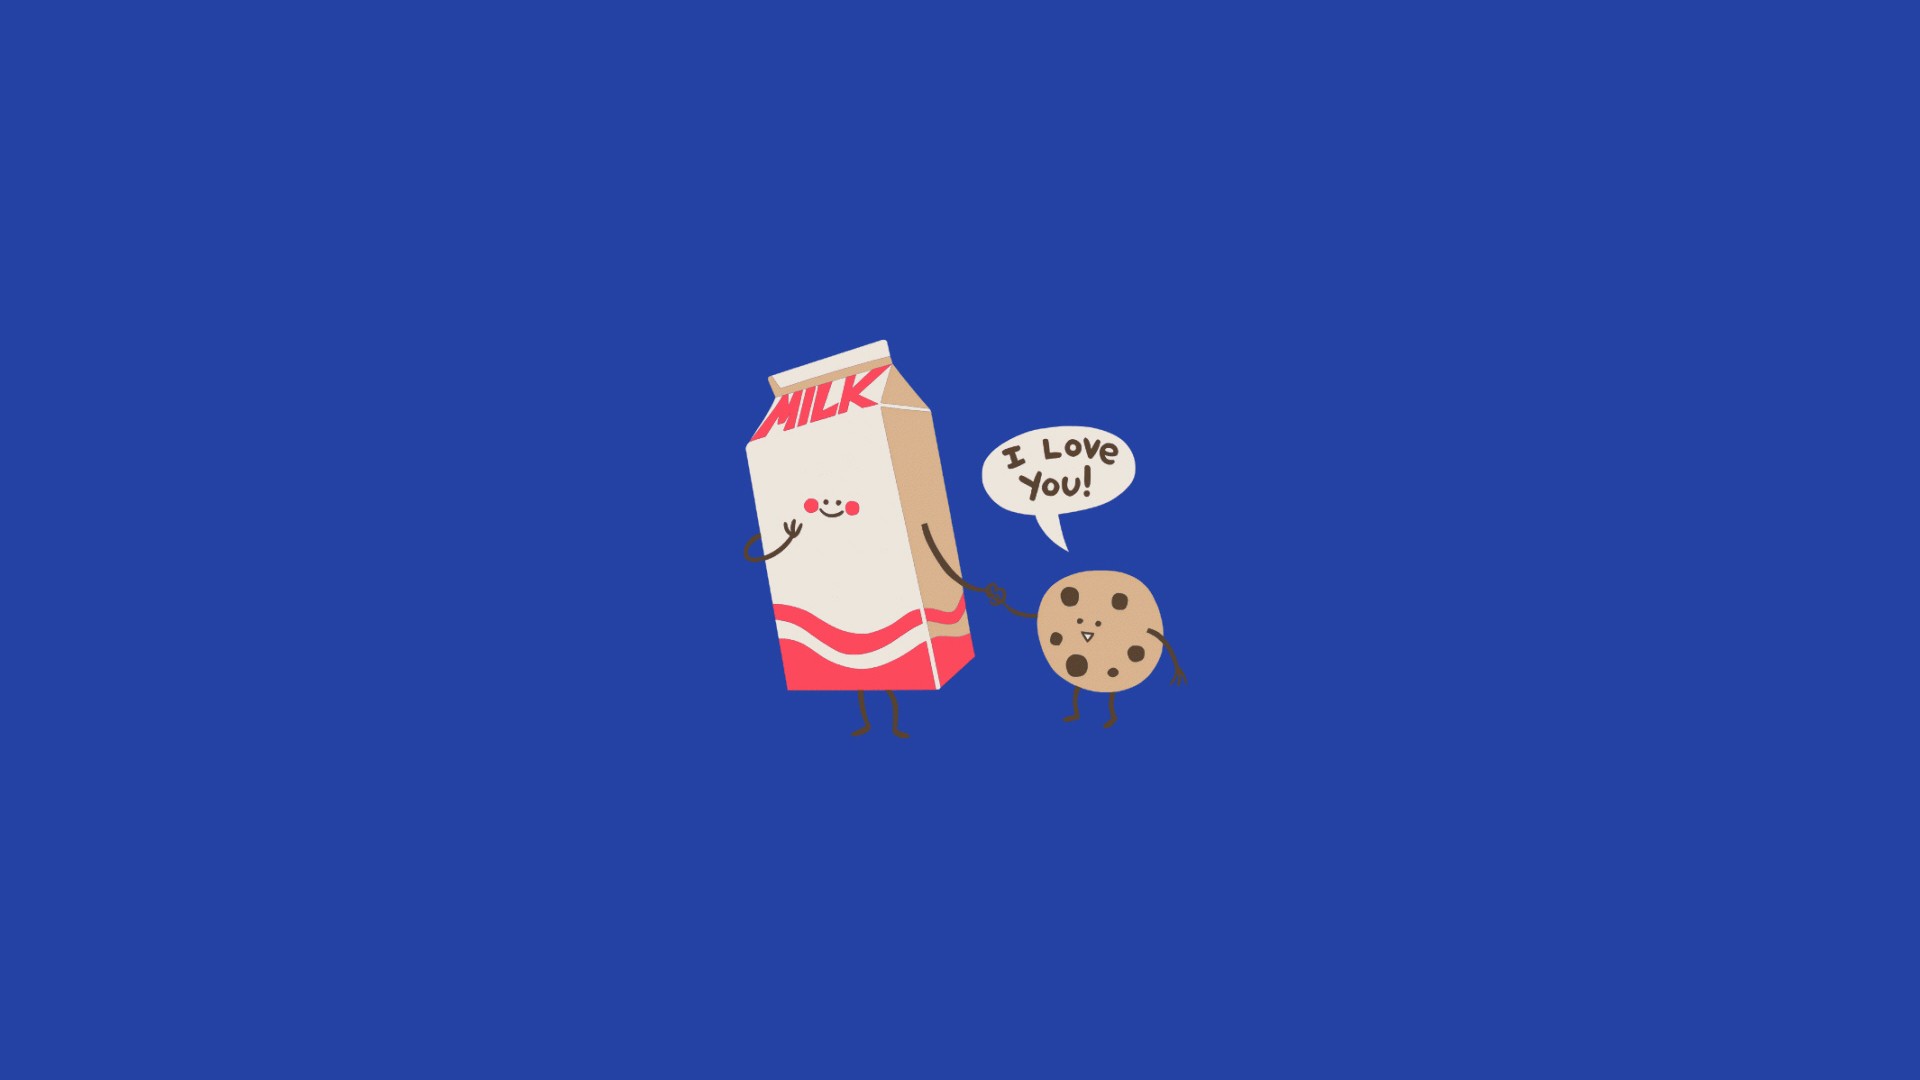 General 1920x1080 minimalism humor drawing blue background milk love cookies simple background food